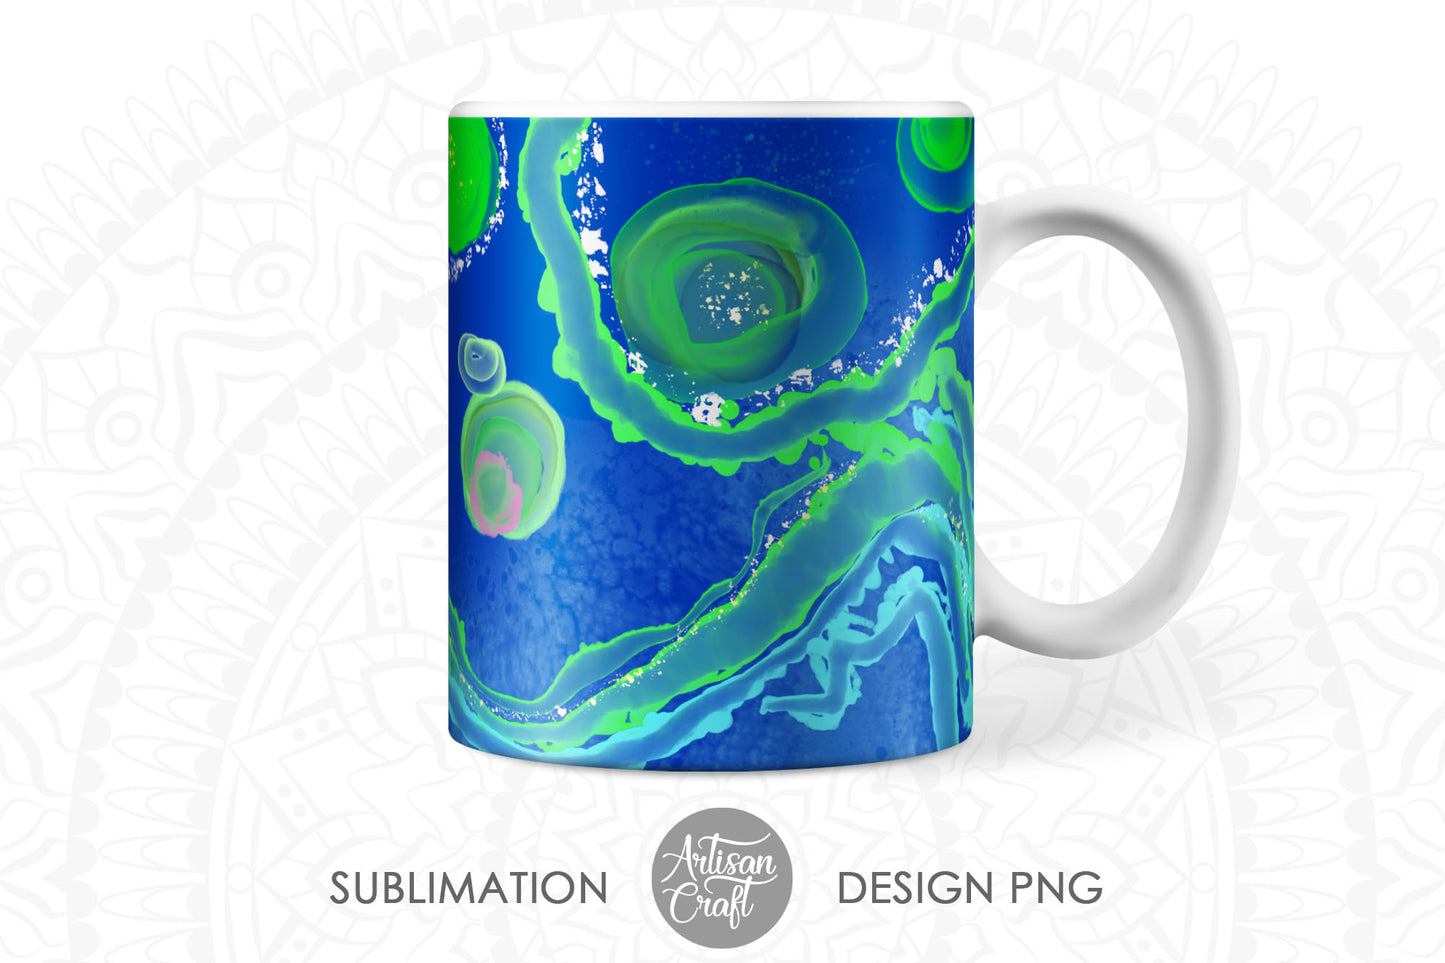 Sublimation mug designs showing malachite art